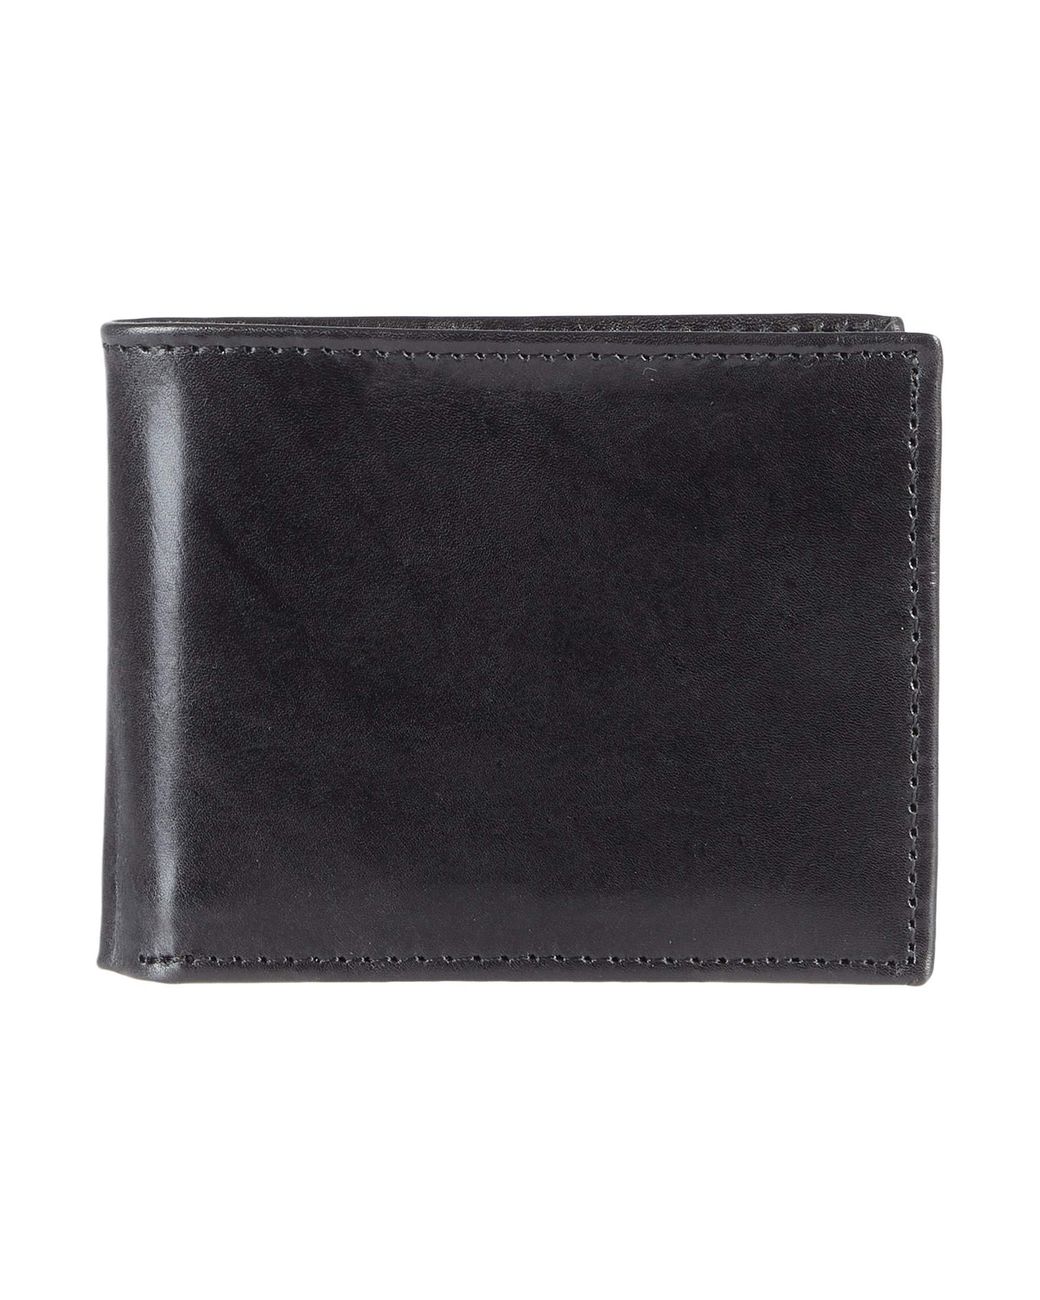 Johnston & Murphy Leather Flip Wallet in Black for Men - Lyst